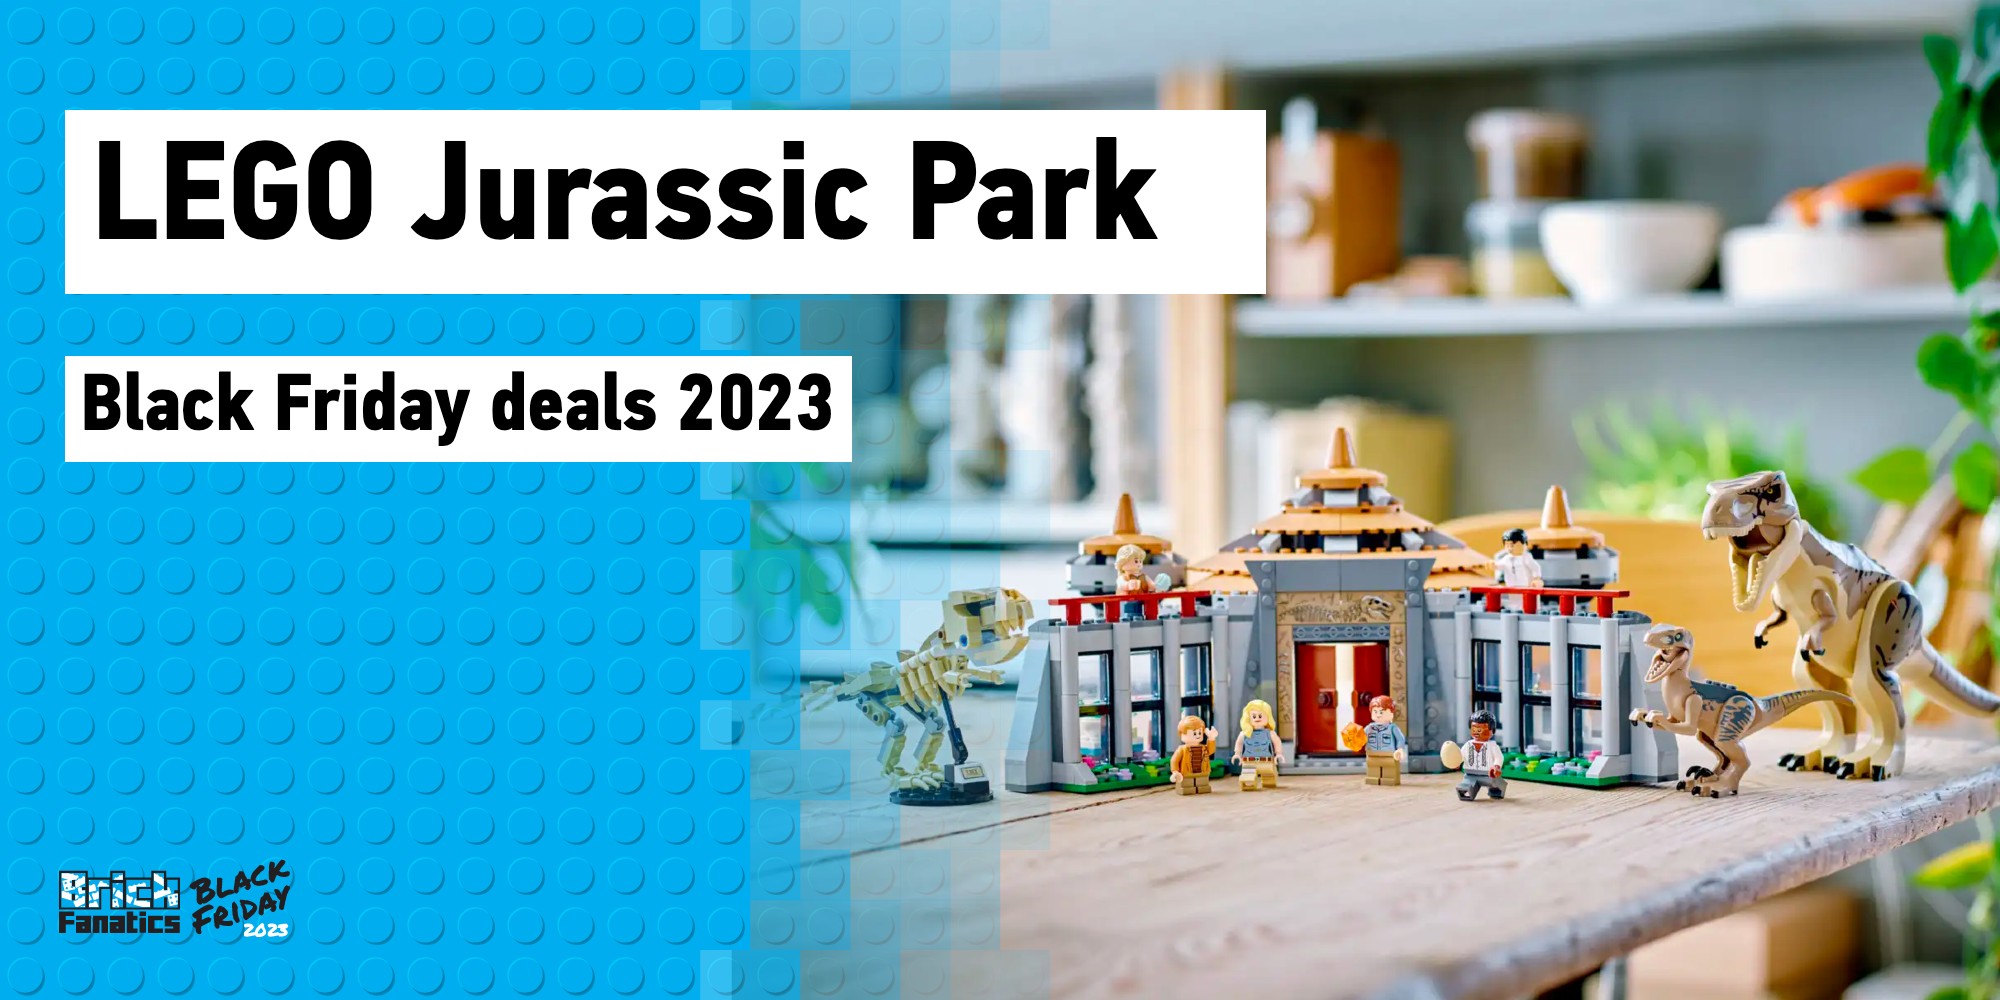 Jurassic World e LEGO Os Incríveis estão nos lançamentos da semana